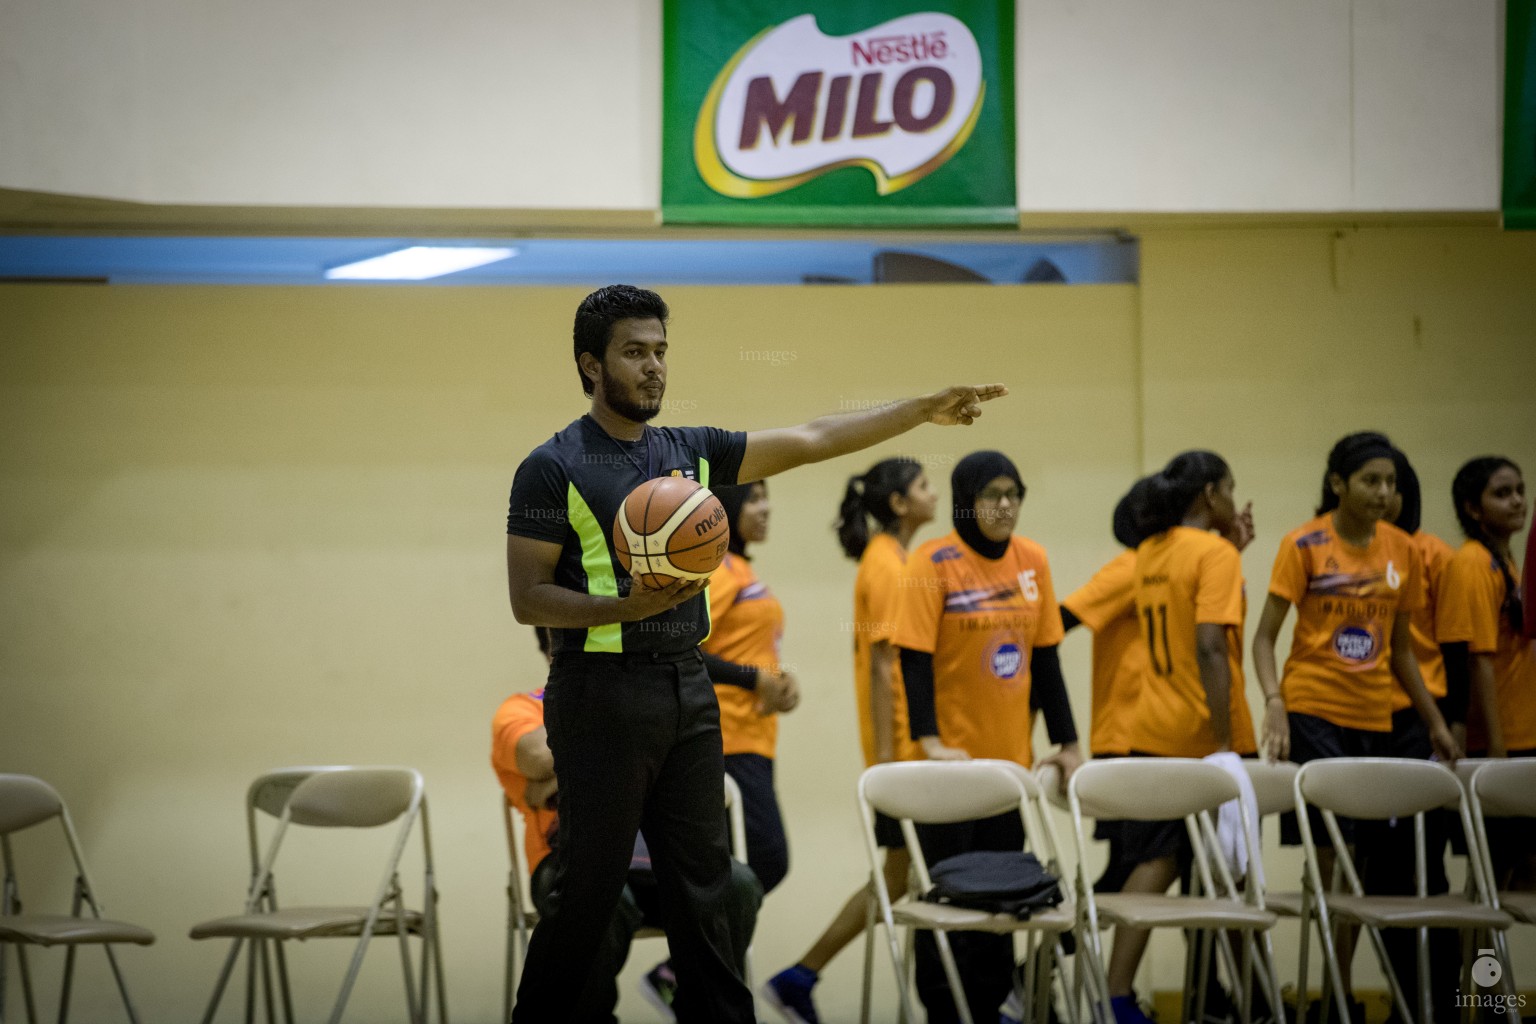 MILO Interschool Basket Tournament 2018 (10th April 2018)